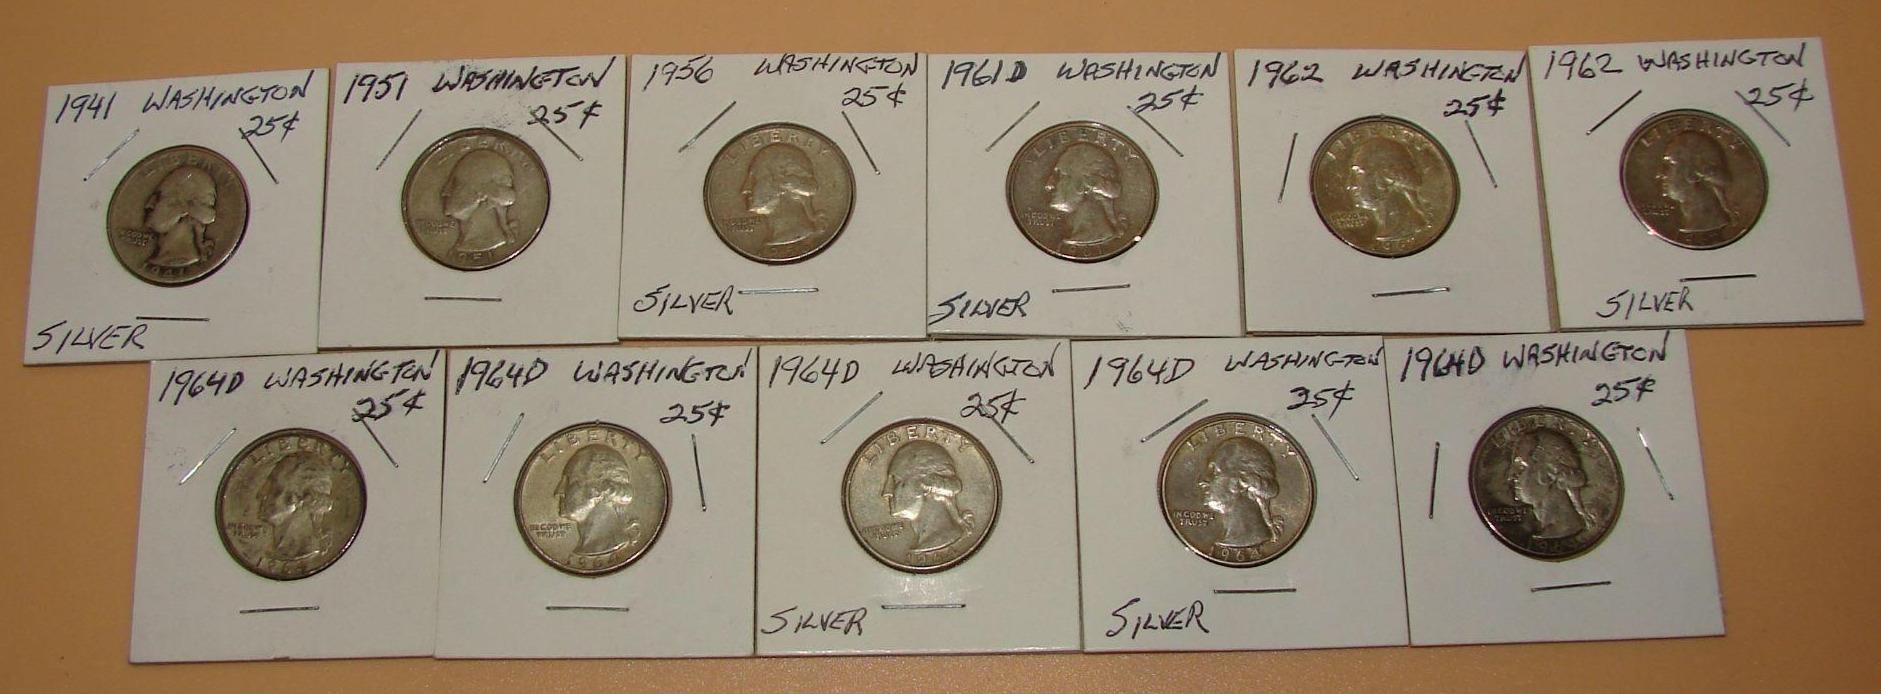 Washington Quarters 90% Sterling Silver 1941-1964